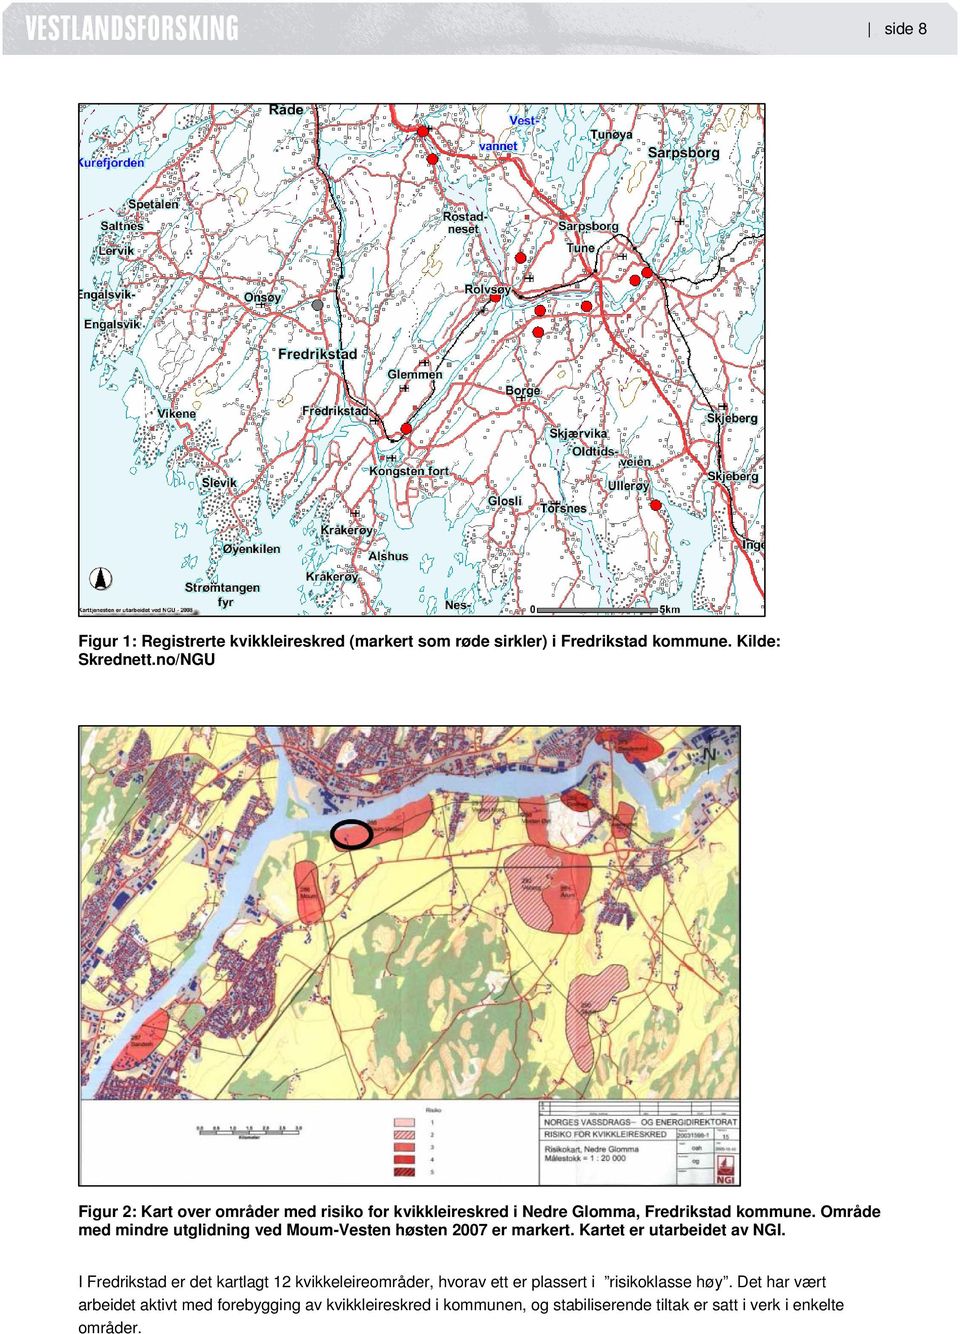 Område med mindre utglidning ved Moum-Vesten høsten 2007 er markert. Kartet er utarbeidet av NGI.